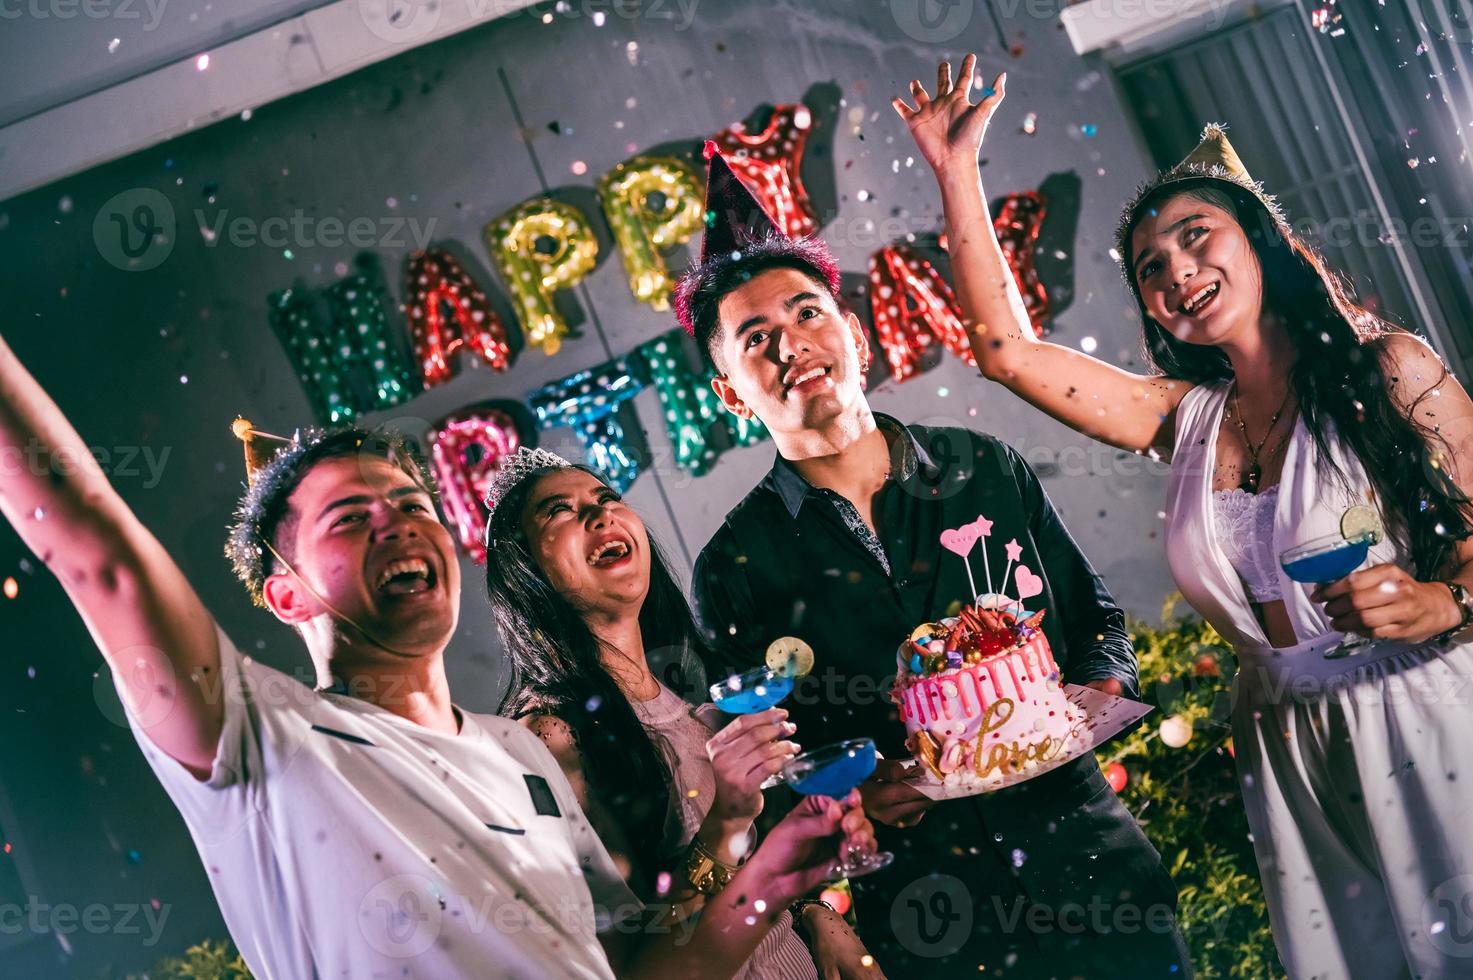 aziatische vrienden die plezier hebben in verjaardagsfeestje in nachtclub met verjaardagstaart. evenement en jubileum concept. mensen levensstijlen en vriendschap foto